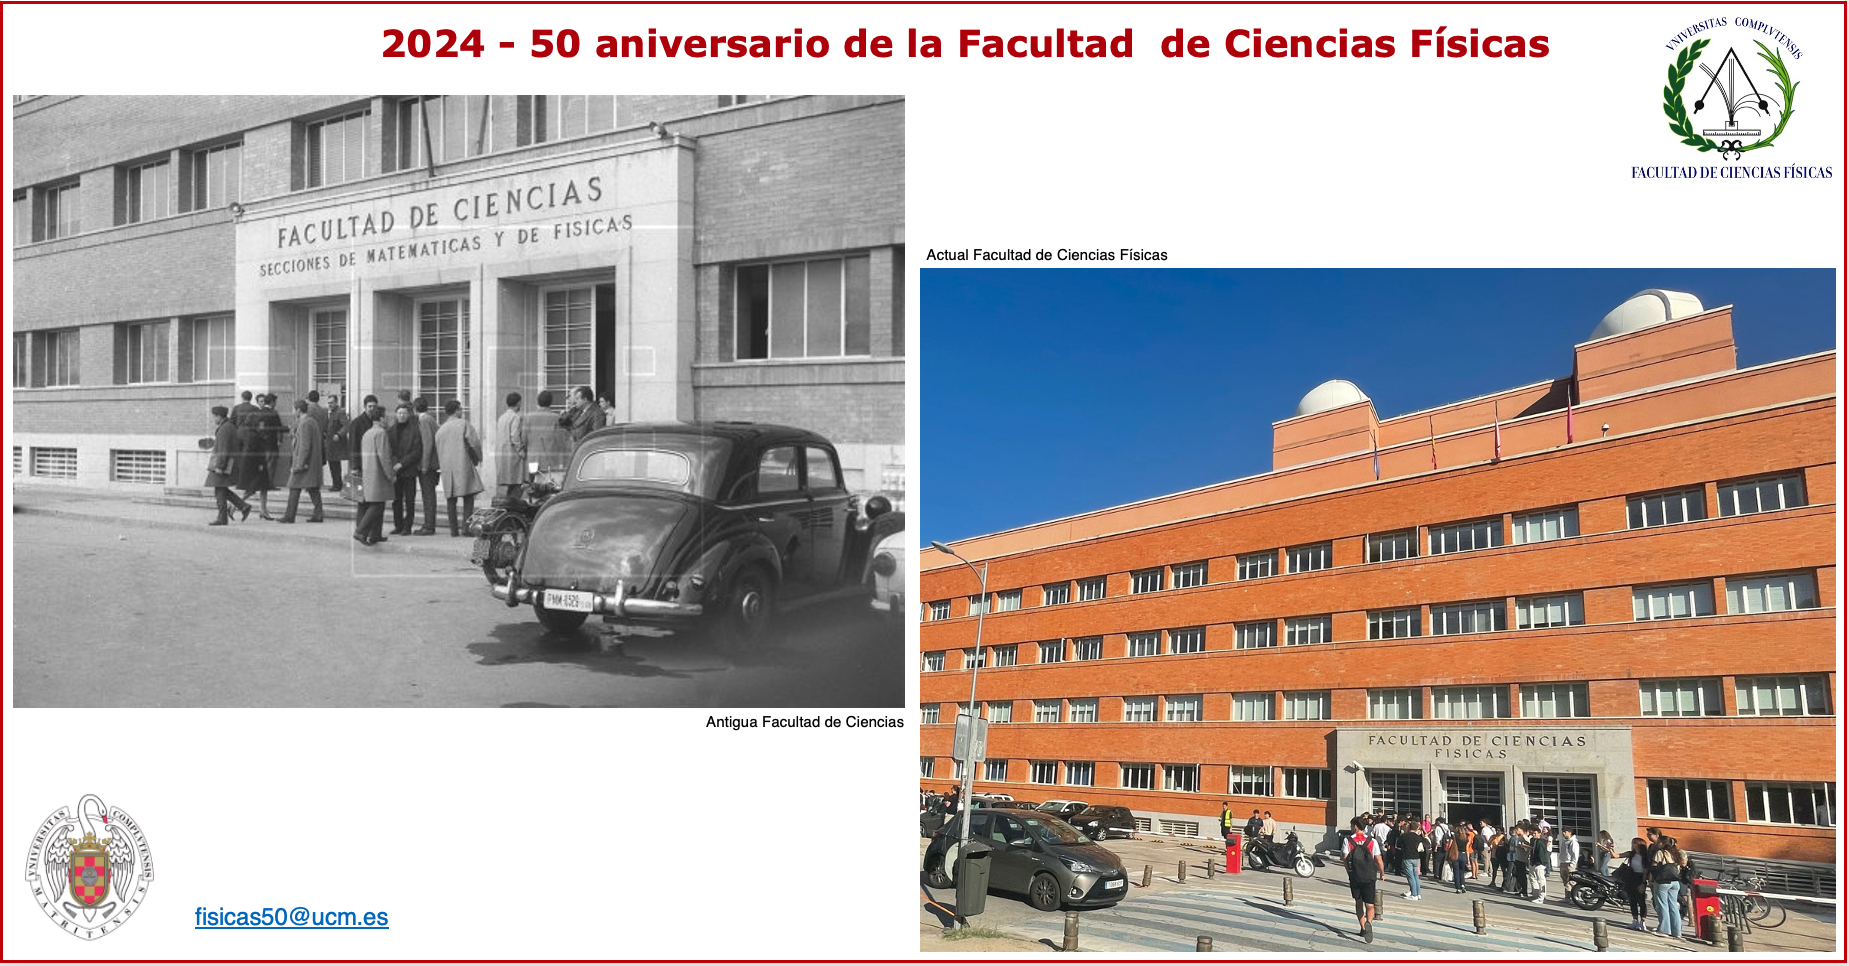 2024 - 50 aniversario de la Facultad de Ciencias Físicas - Aportaciones y comentarios a: fisicas50@ucm.es